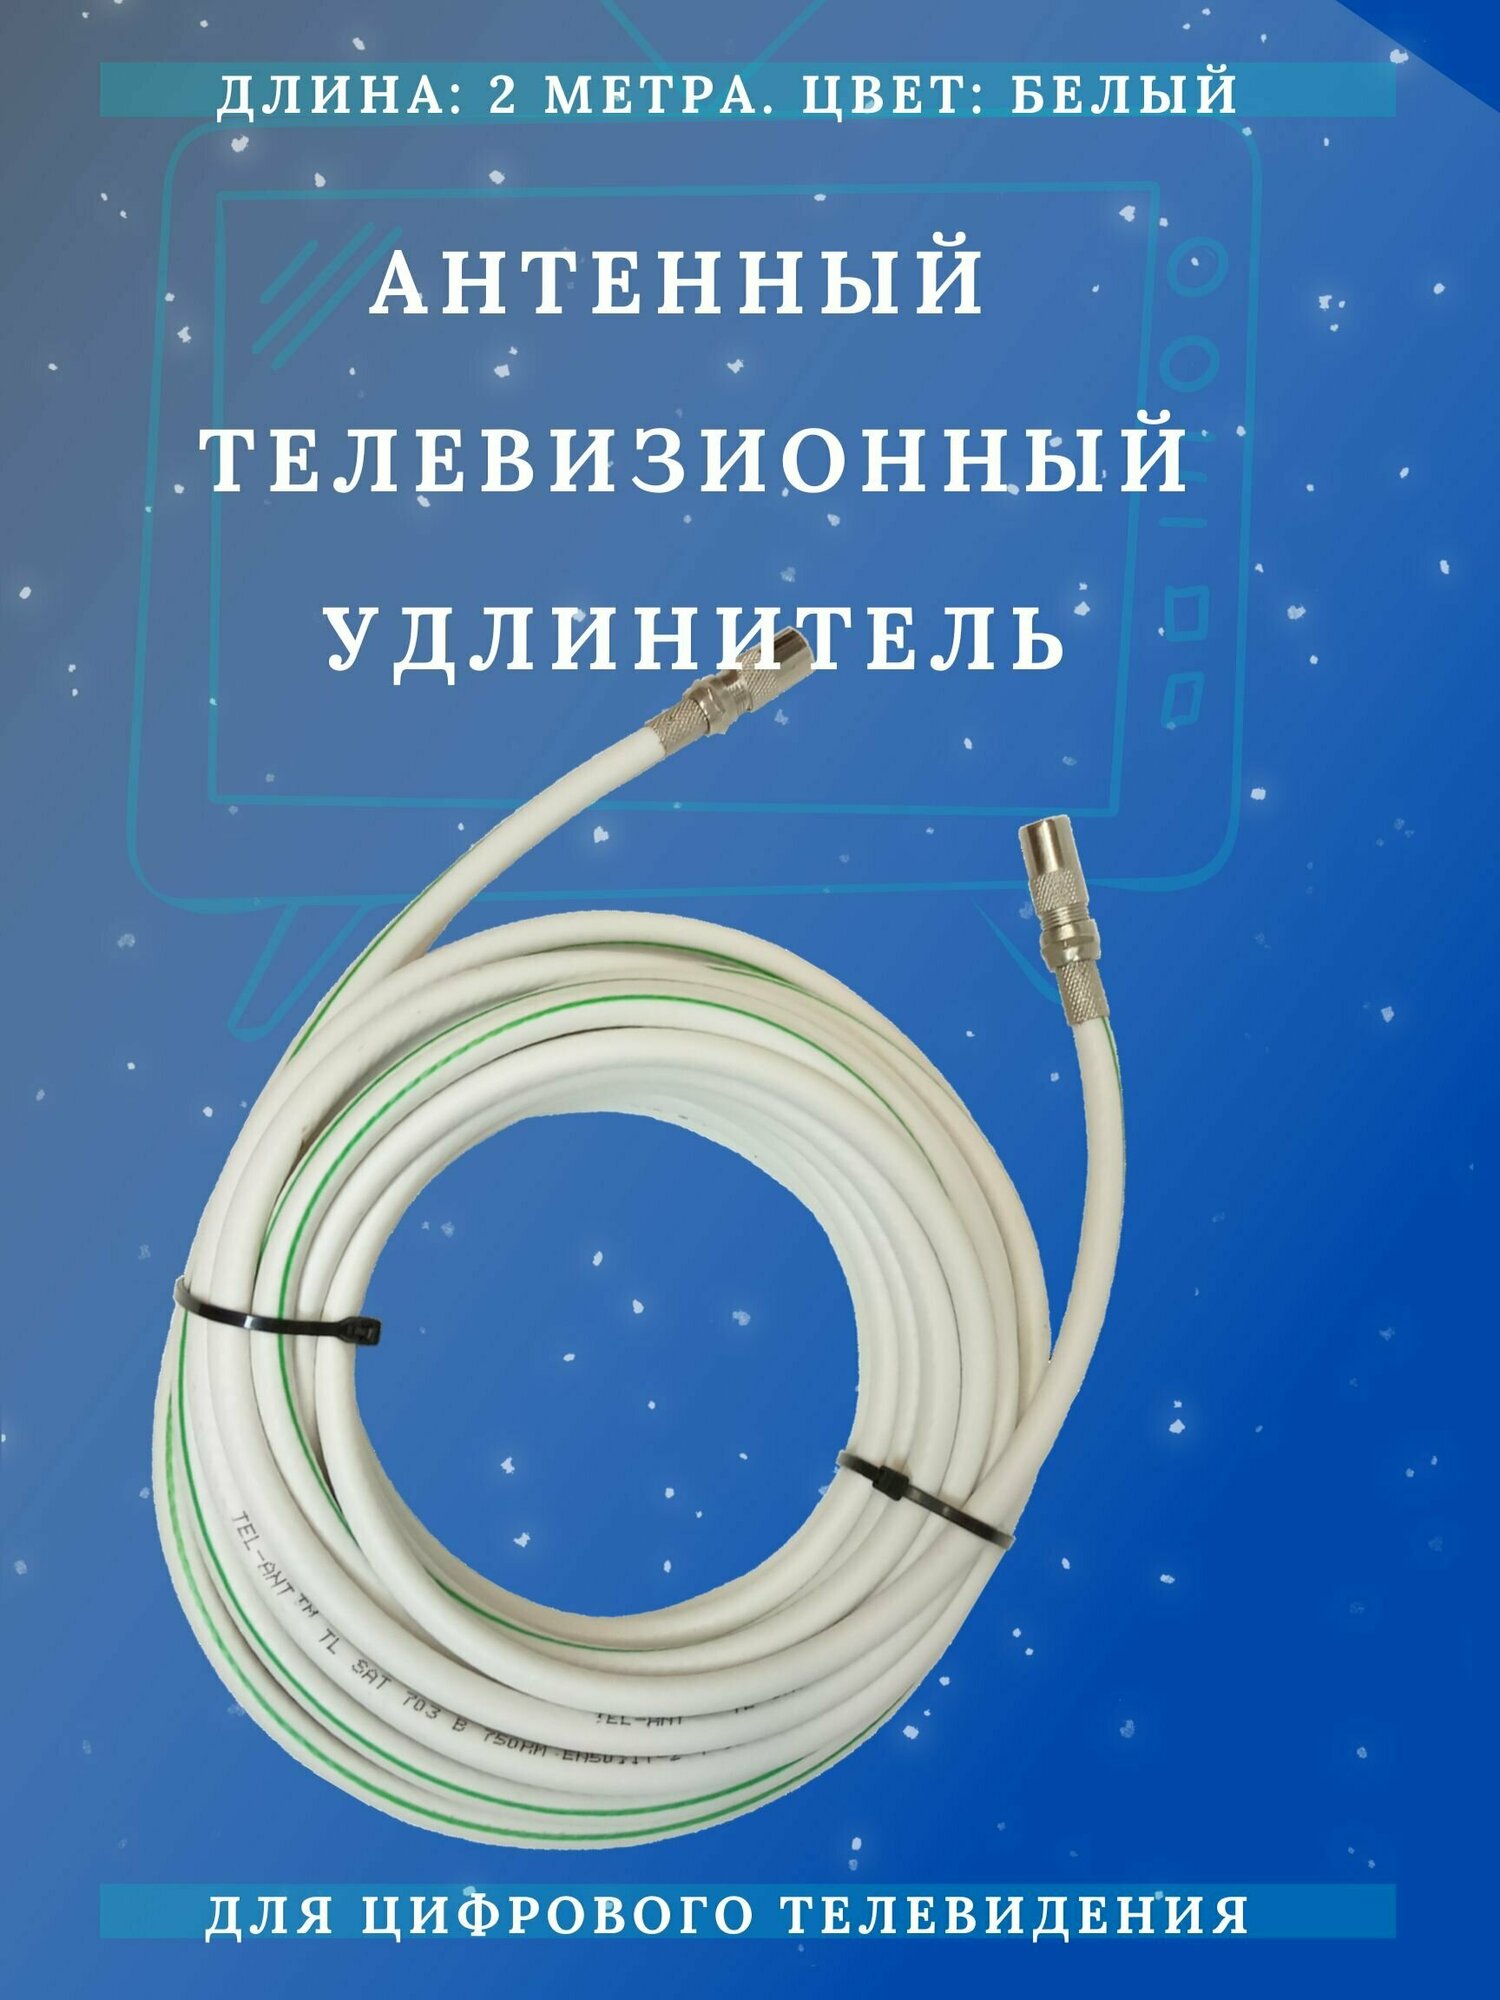 Антенный кабель телевизионный (удлинитель) ТАУ-2 метра Триада LUX белый